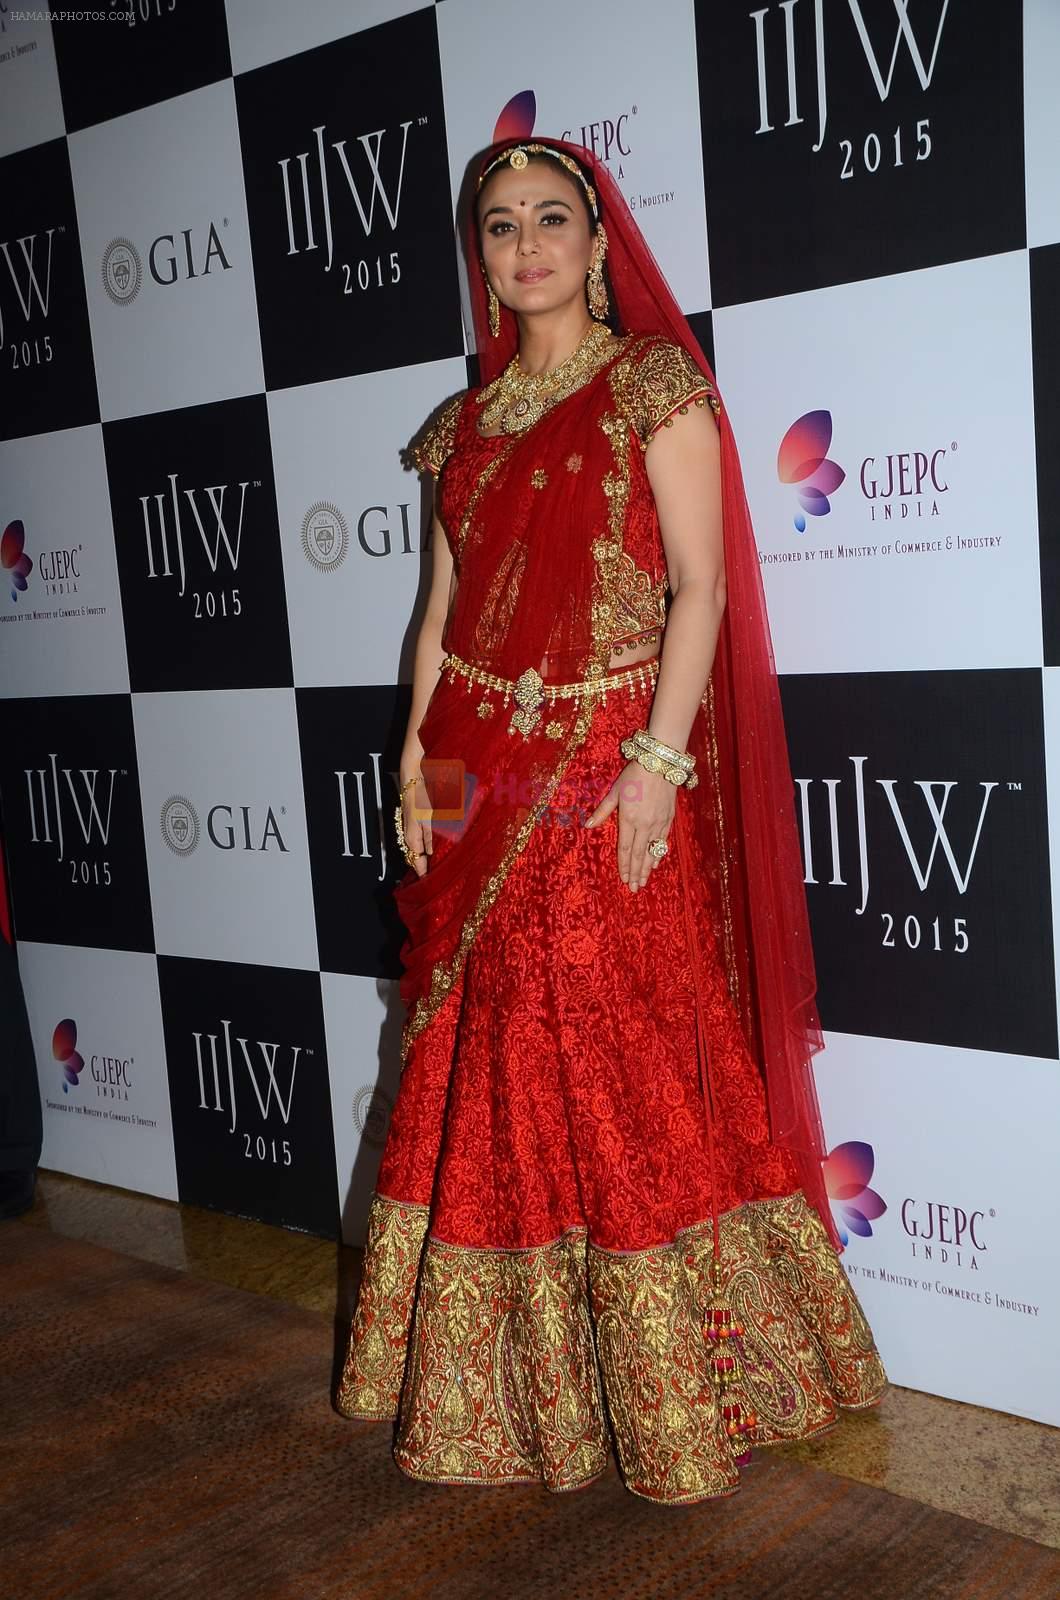 Preity Zinta on Day 3 of IIJW 2015 on 5th Aug 2015